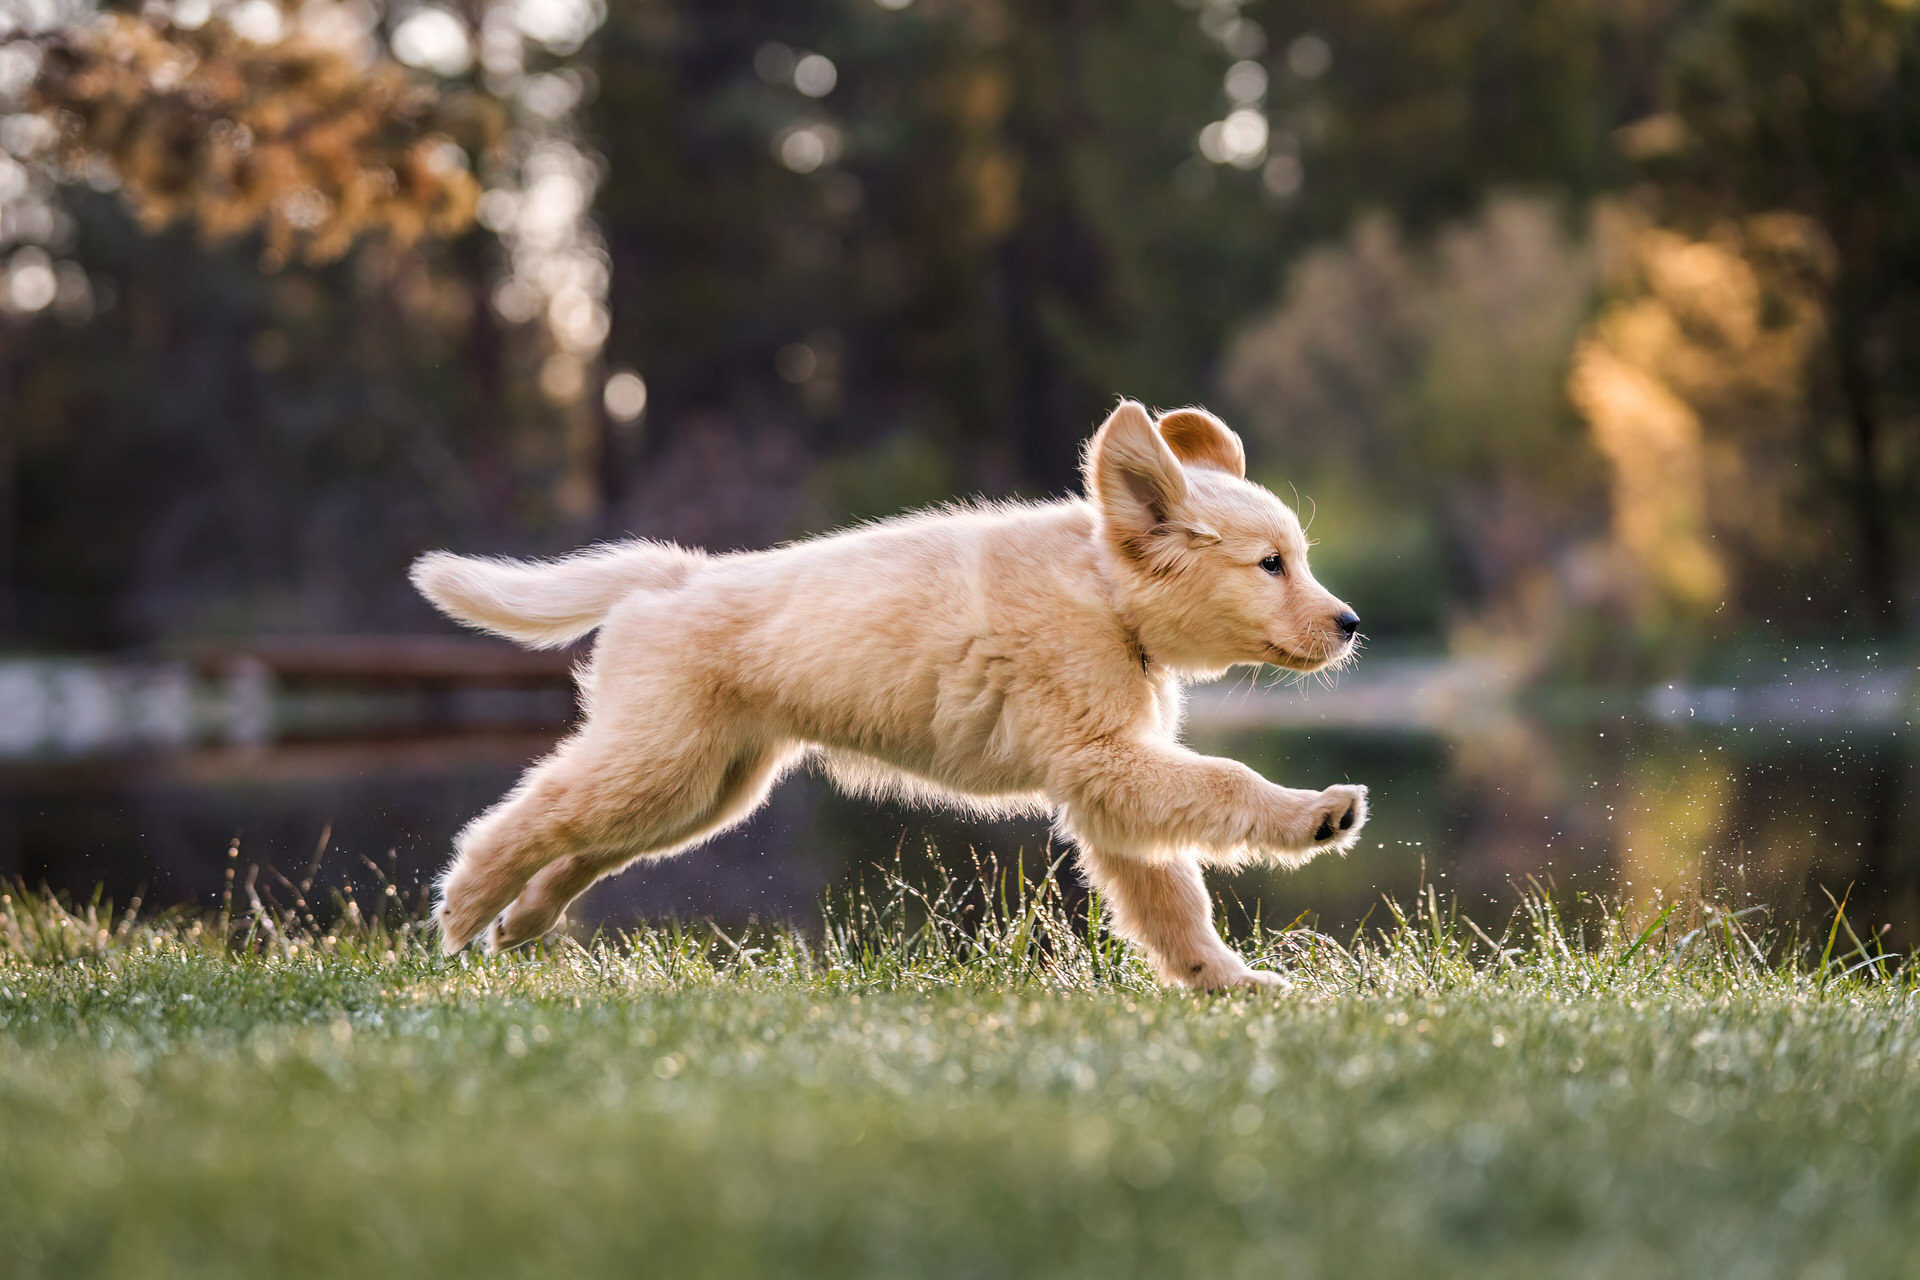 puppy runs through grass at Shevlin Park